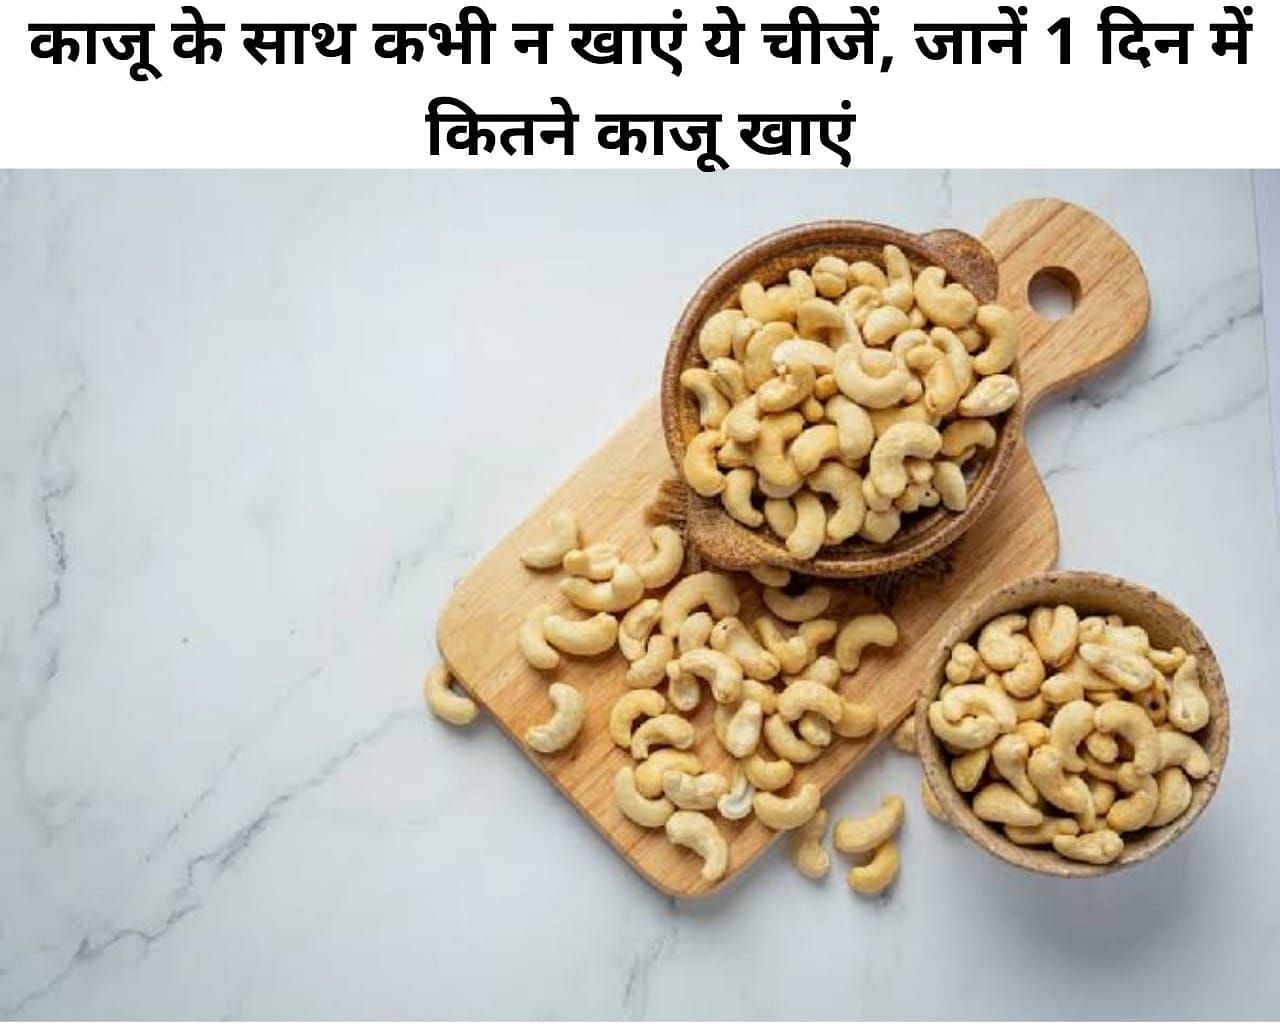 काजू के साथ कभी न खाएं ये चीजें, जानें 1 दिन में कितने काजू खाएं (फोटो - sportskeeda hindi)